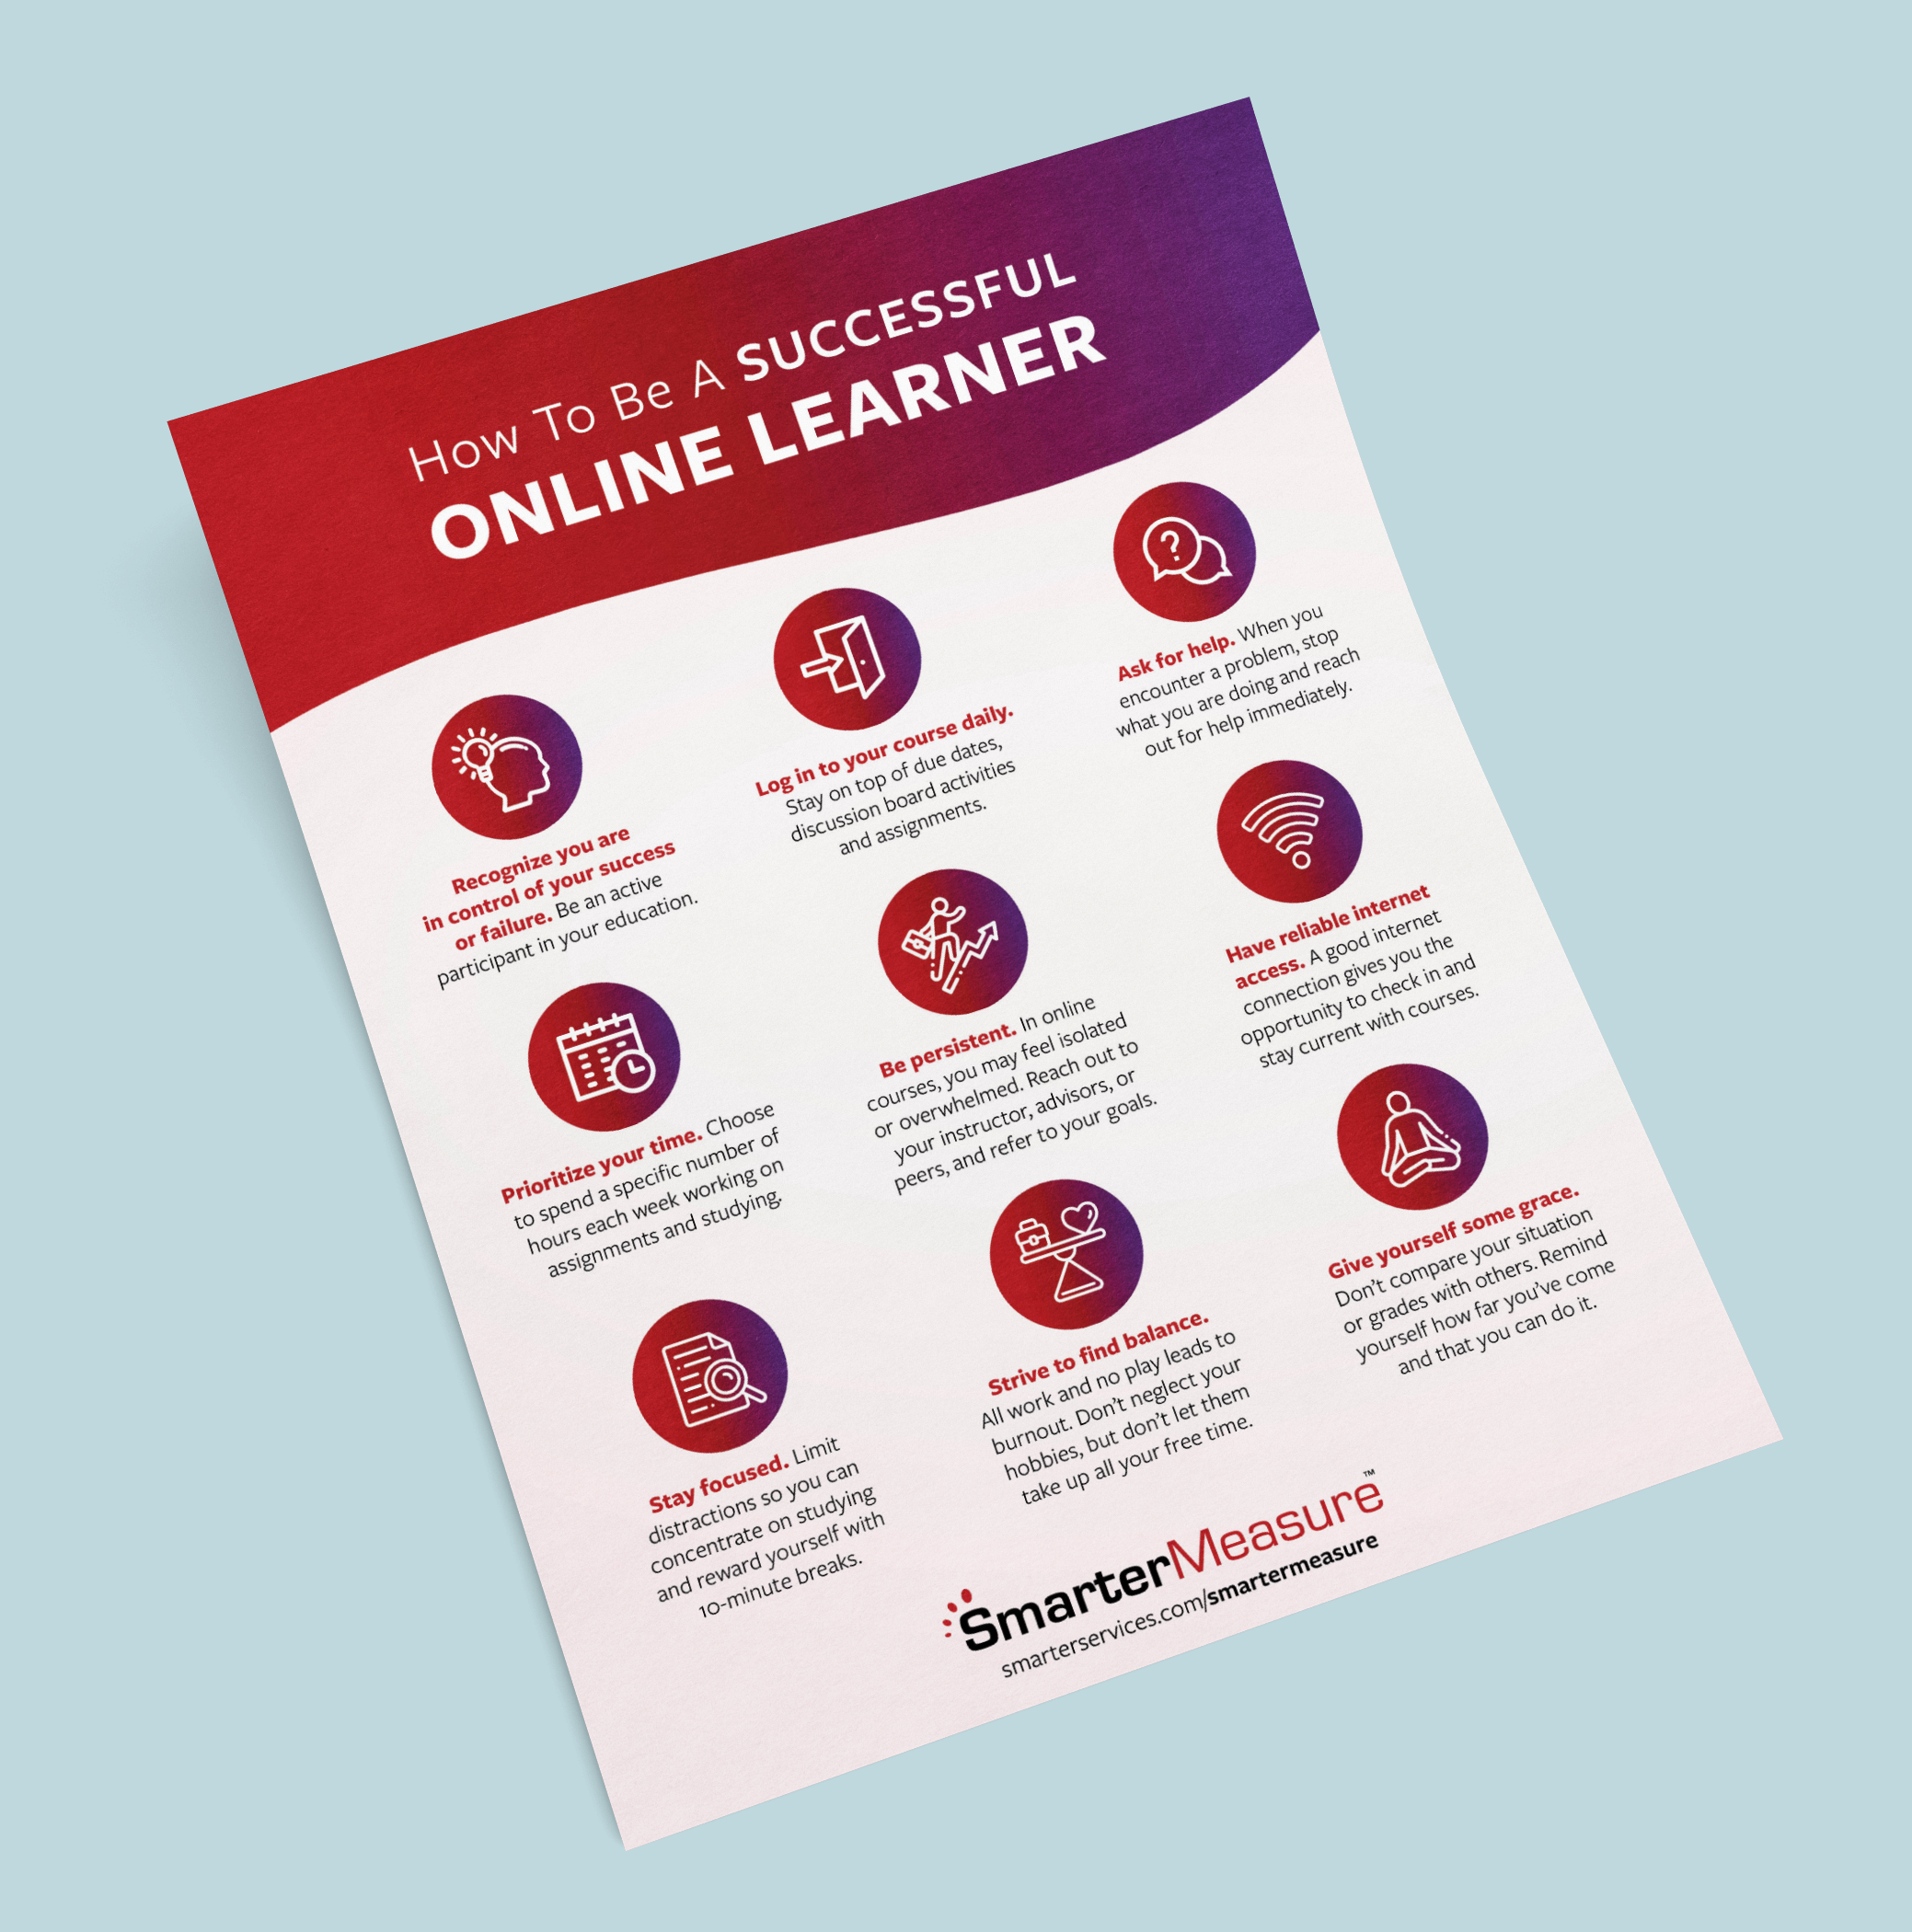 SM Online Learner 